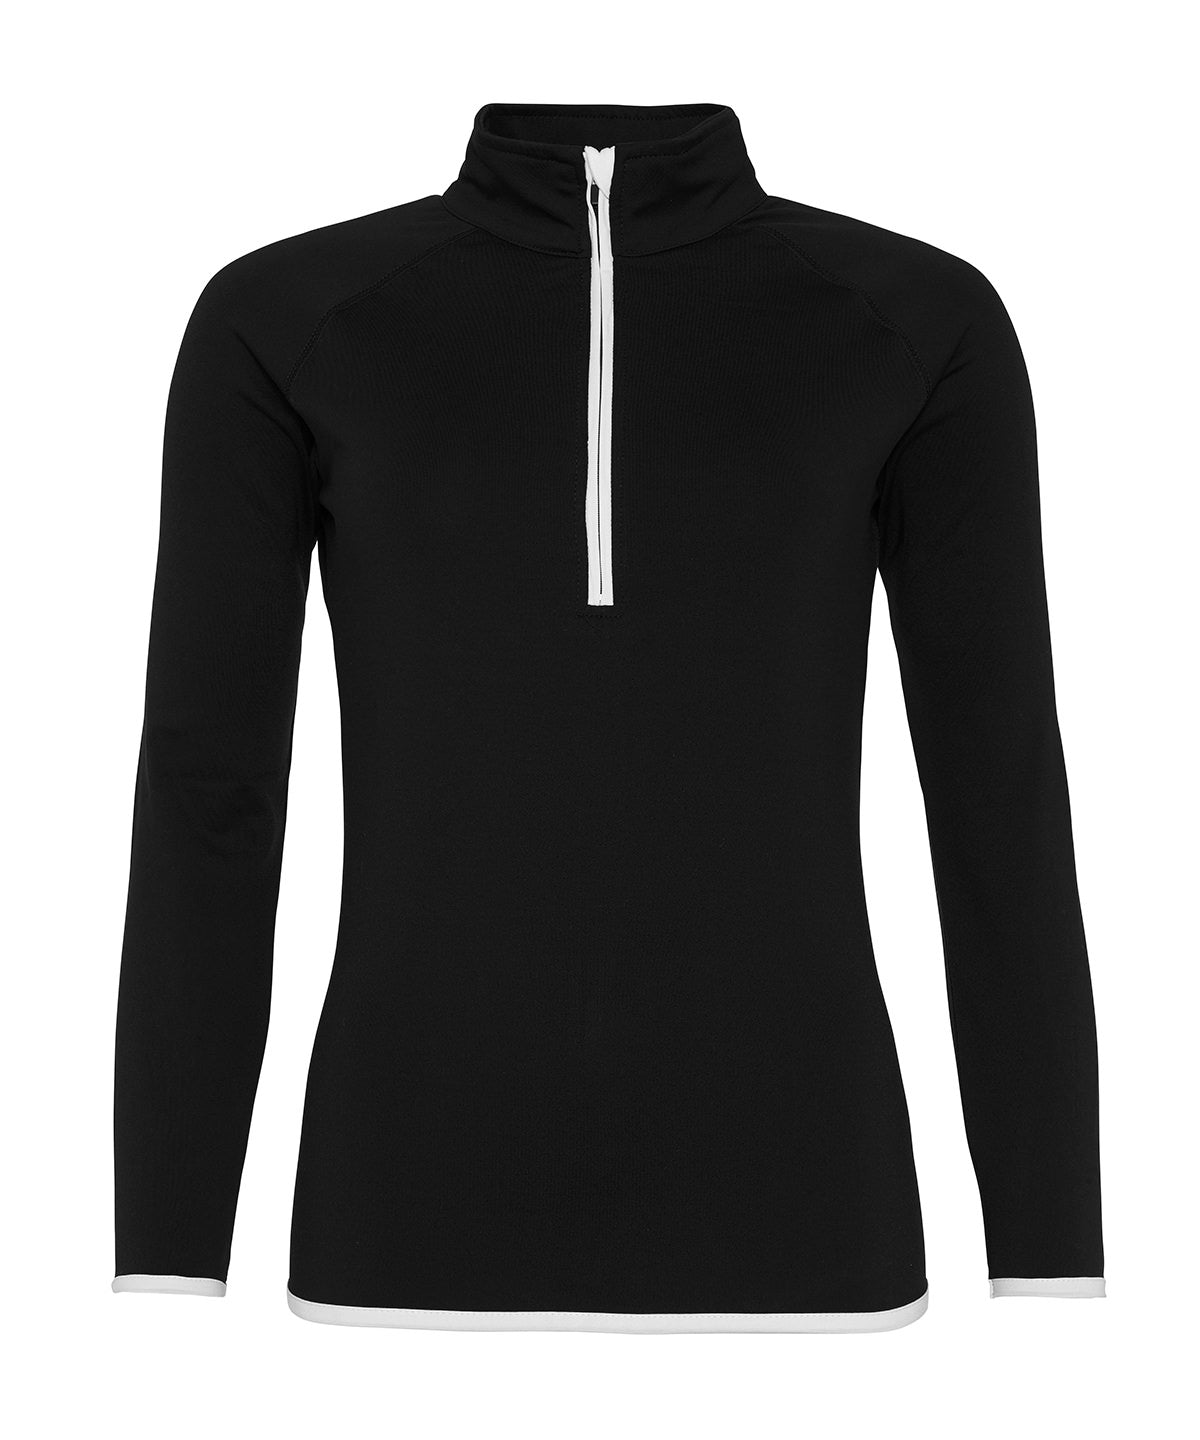 Women's cool ½ zip sweatshirt | Jet Black/Arctic White